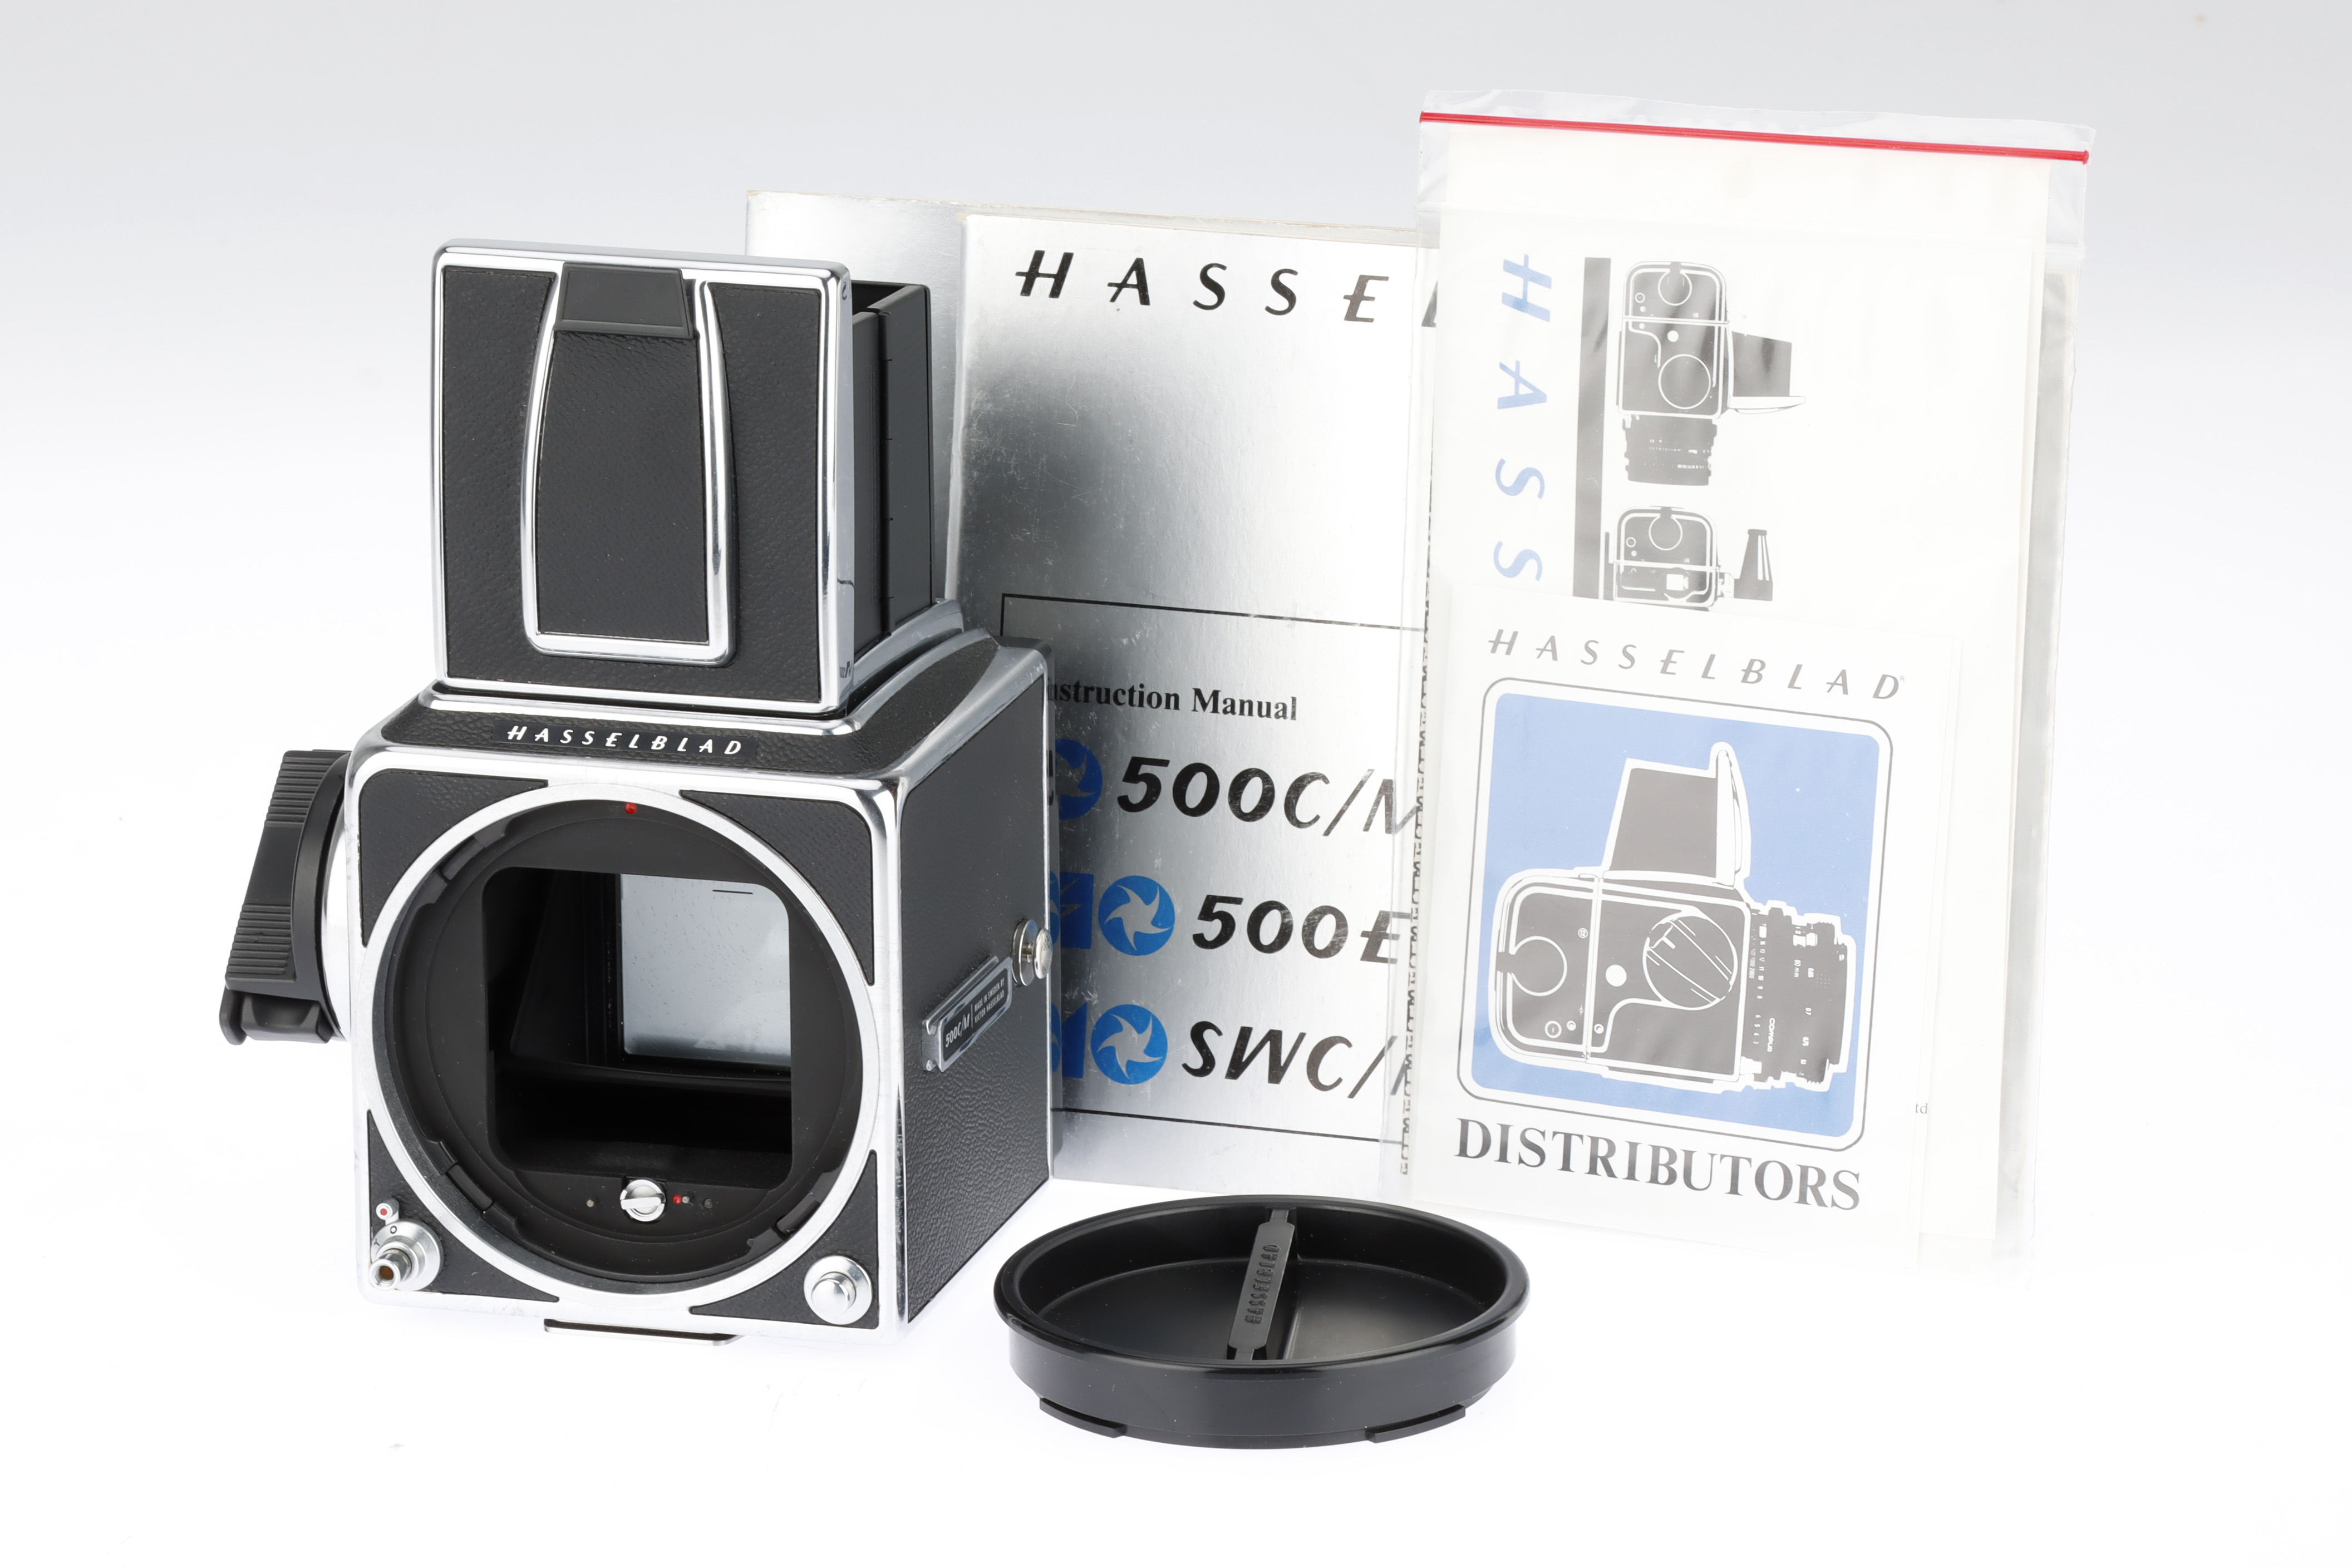 A Hasselblad 500C/M Medium Format Body,